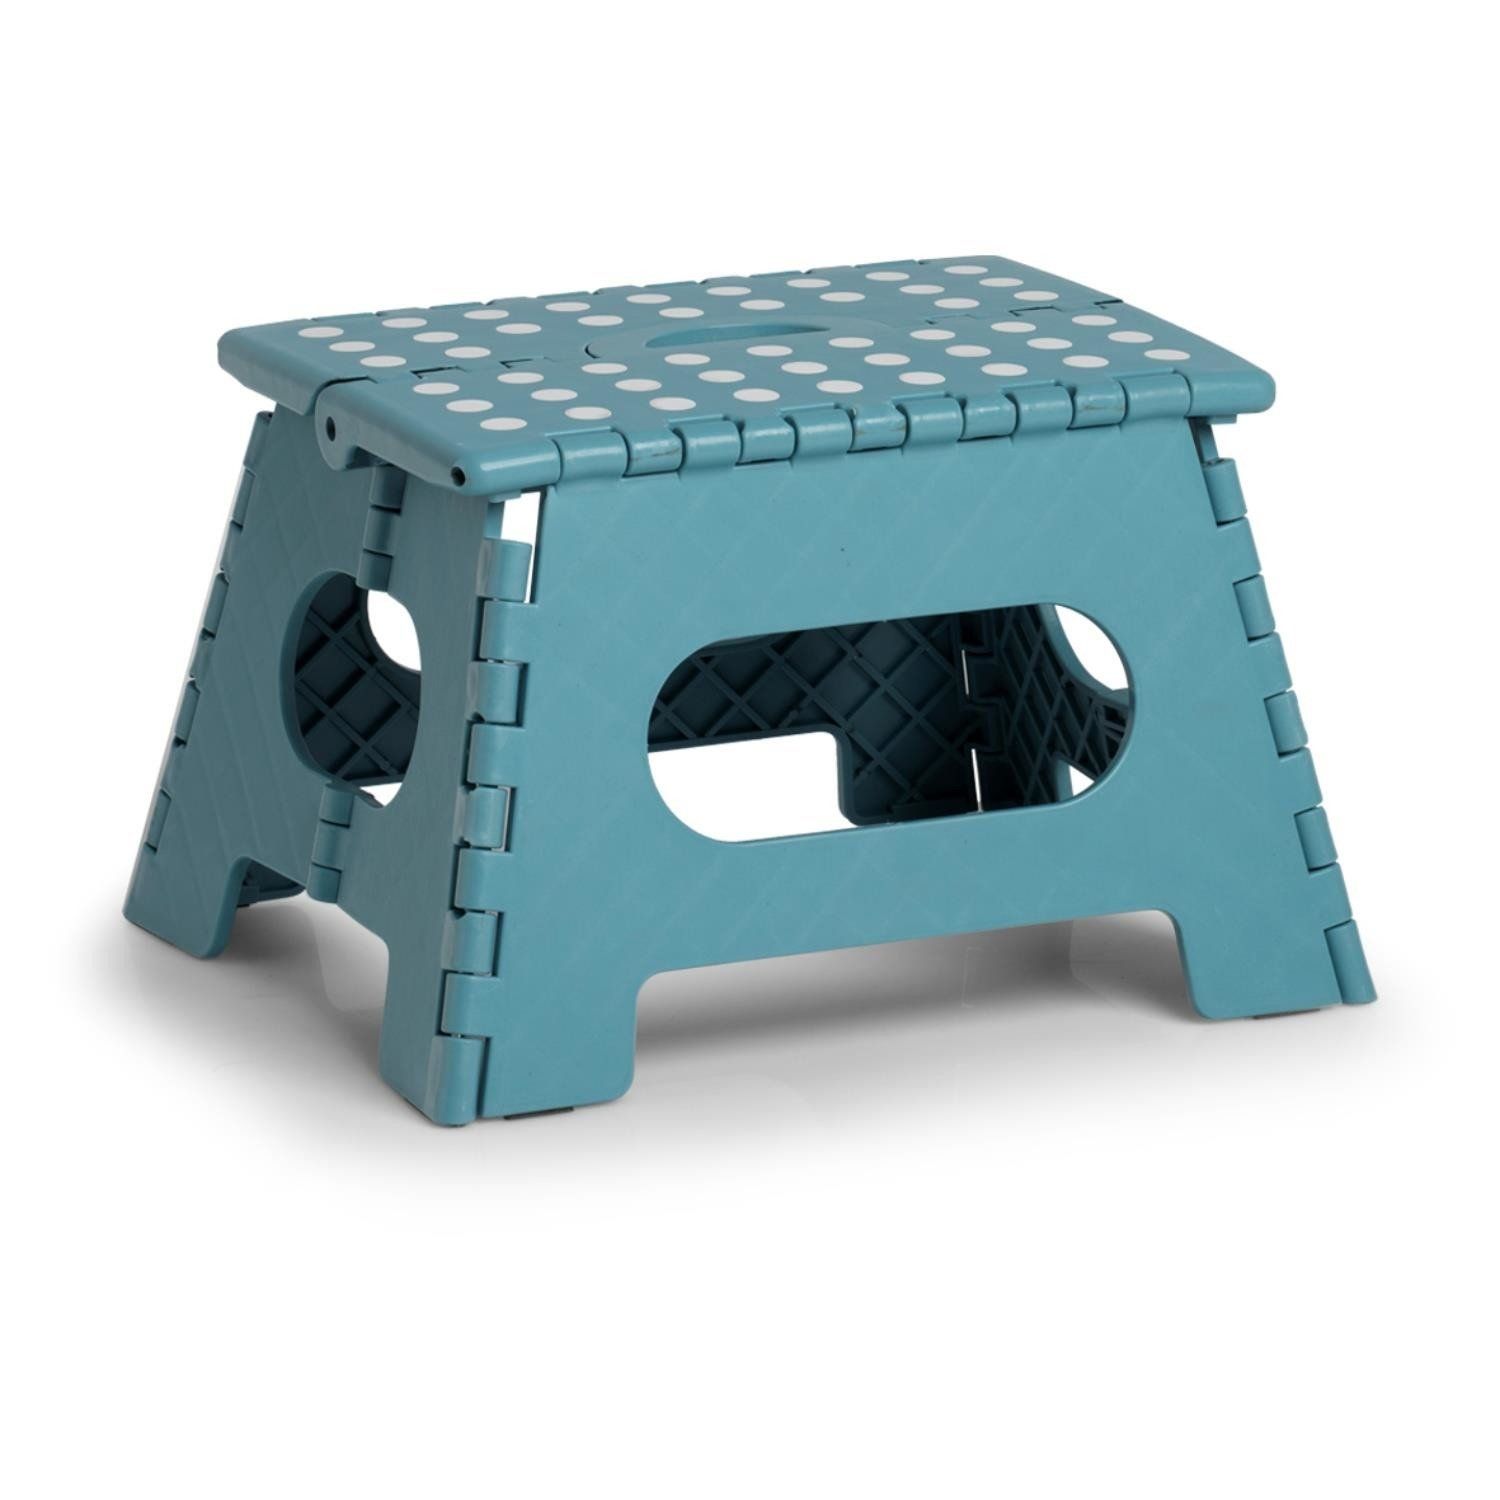 Protiskluzová skládací stolička, modrozelená, 35 x 28 x 22 cm, ZELLER - EMAKO.CZ s.r.o.